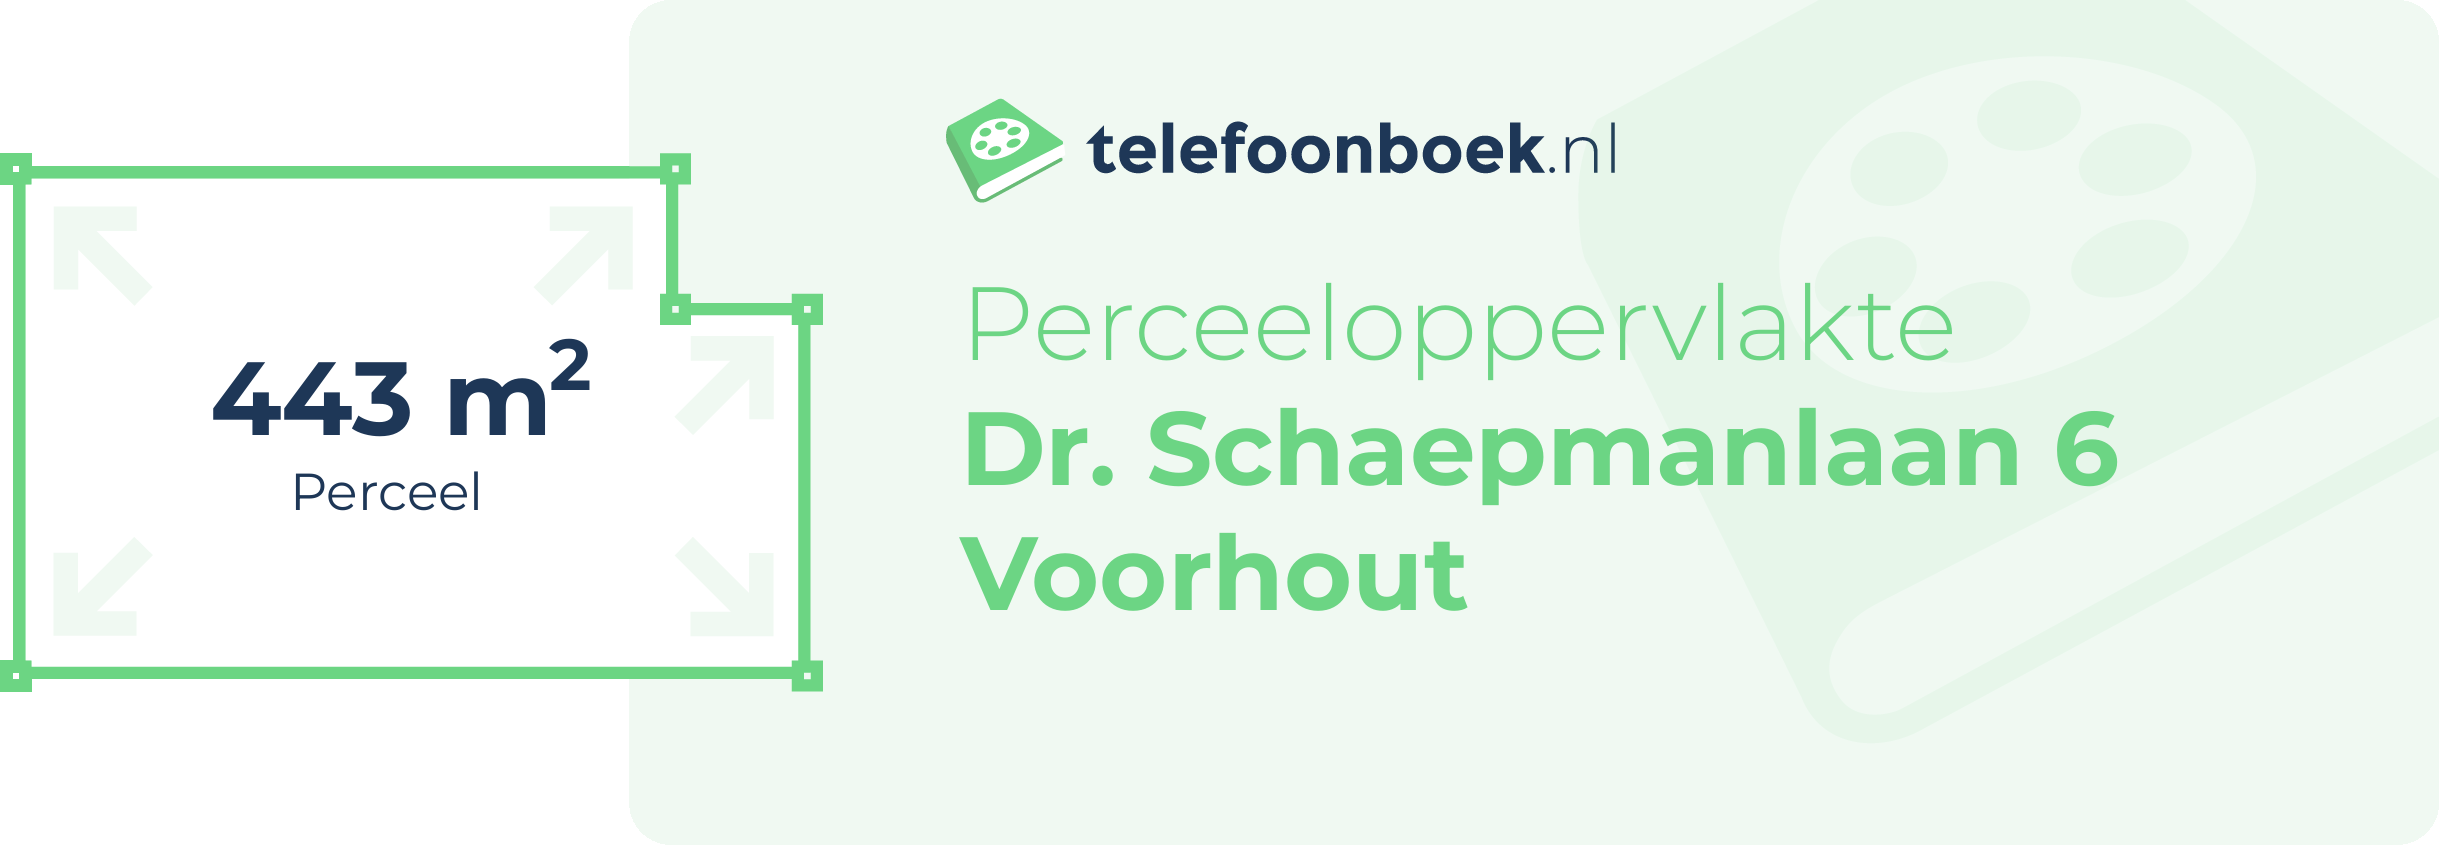 Perceeloppervlakte Dr. Schaepmanlaan 6 Voorhout